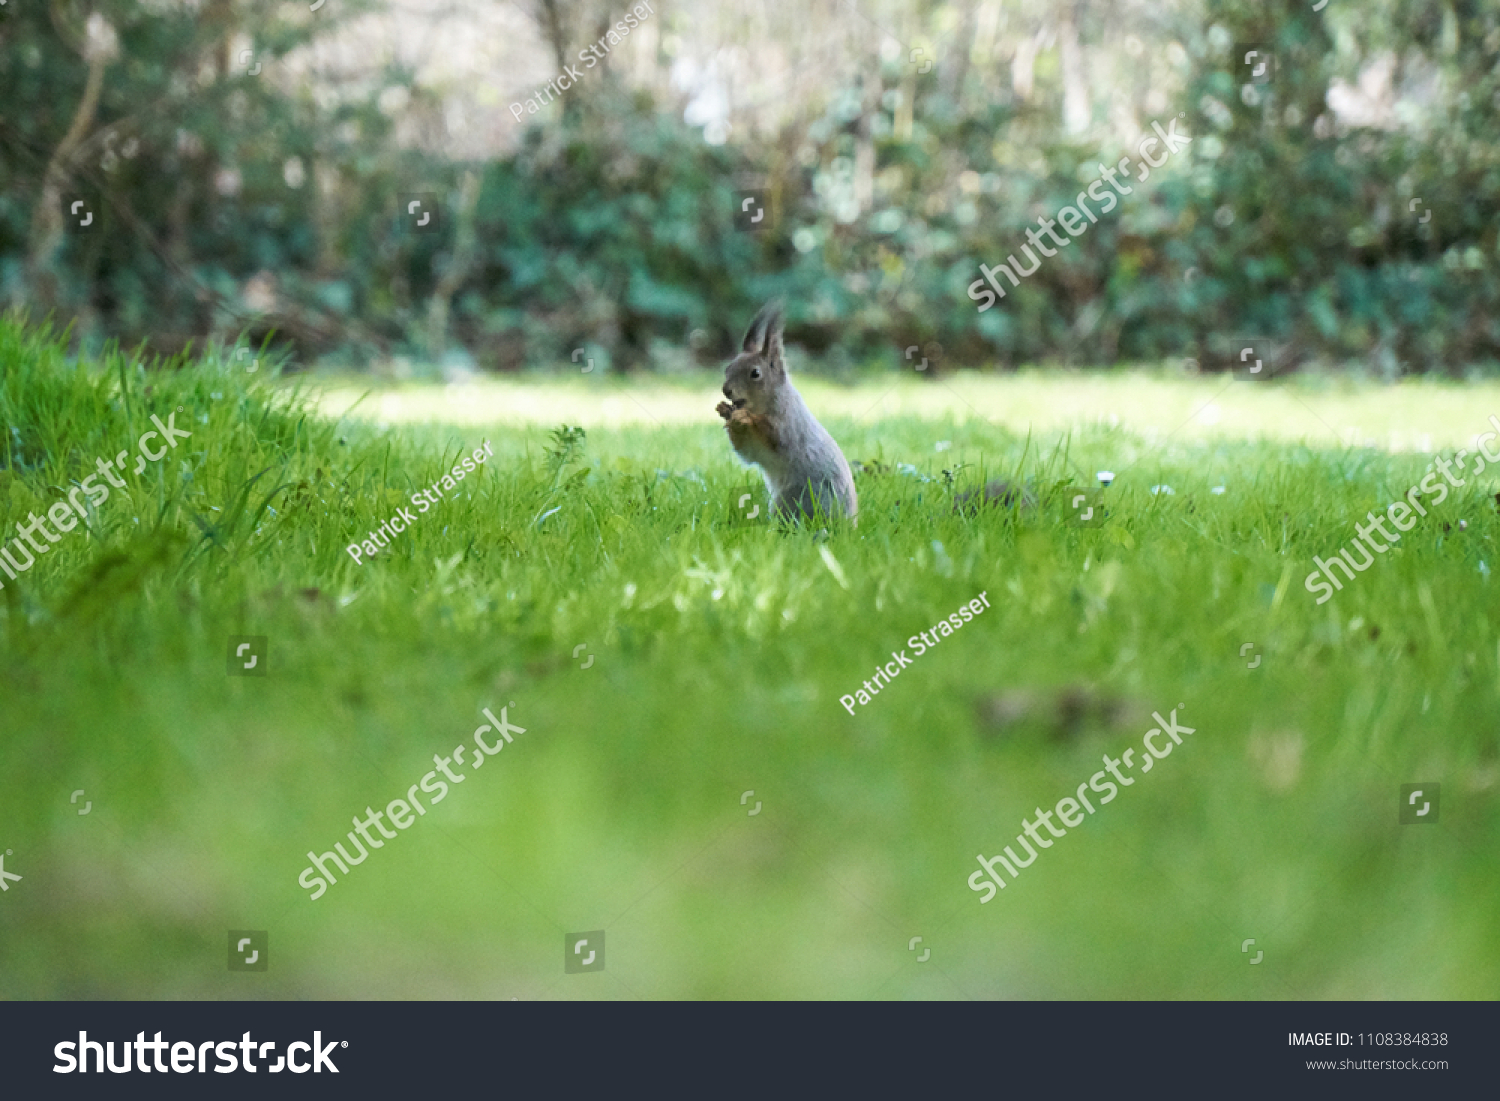                     Squirrel on a lawn #1108384838